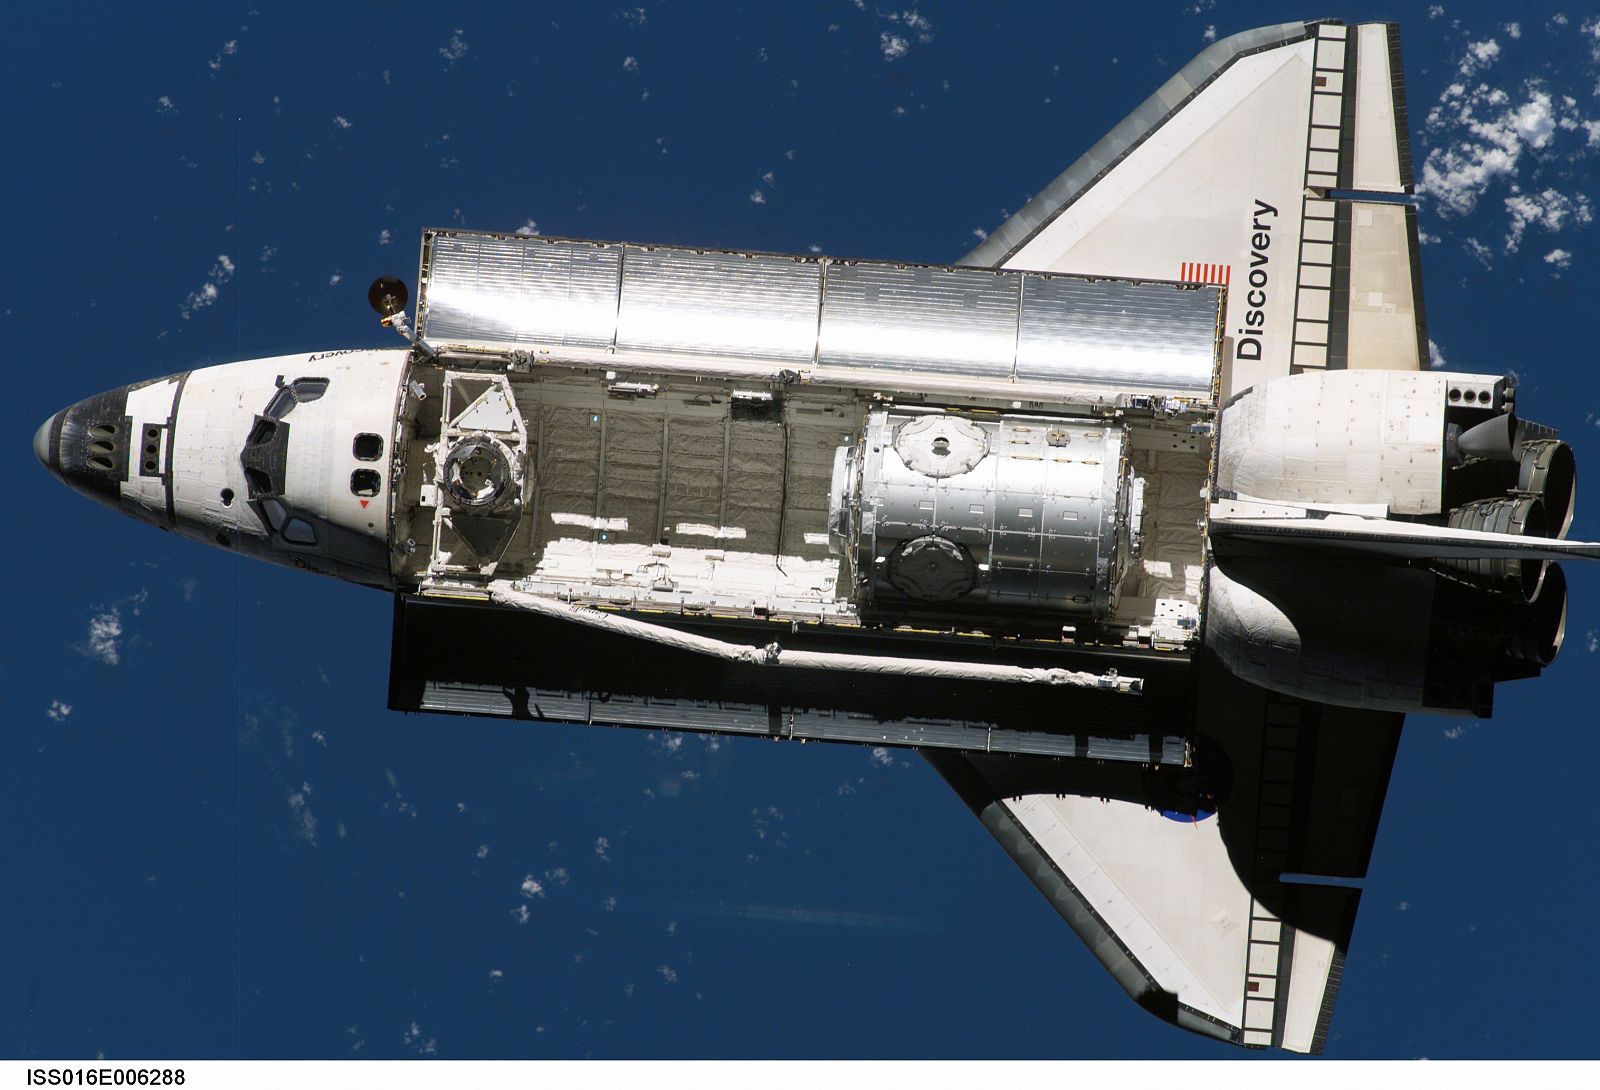 El Discovery en su elemento, poco antes de la llegada a la Estación Espacial Internacional en la misión STS-120